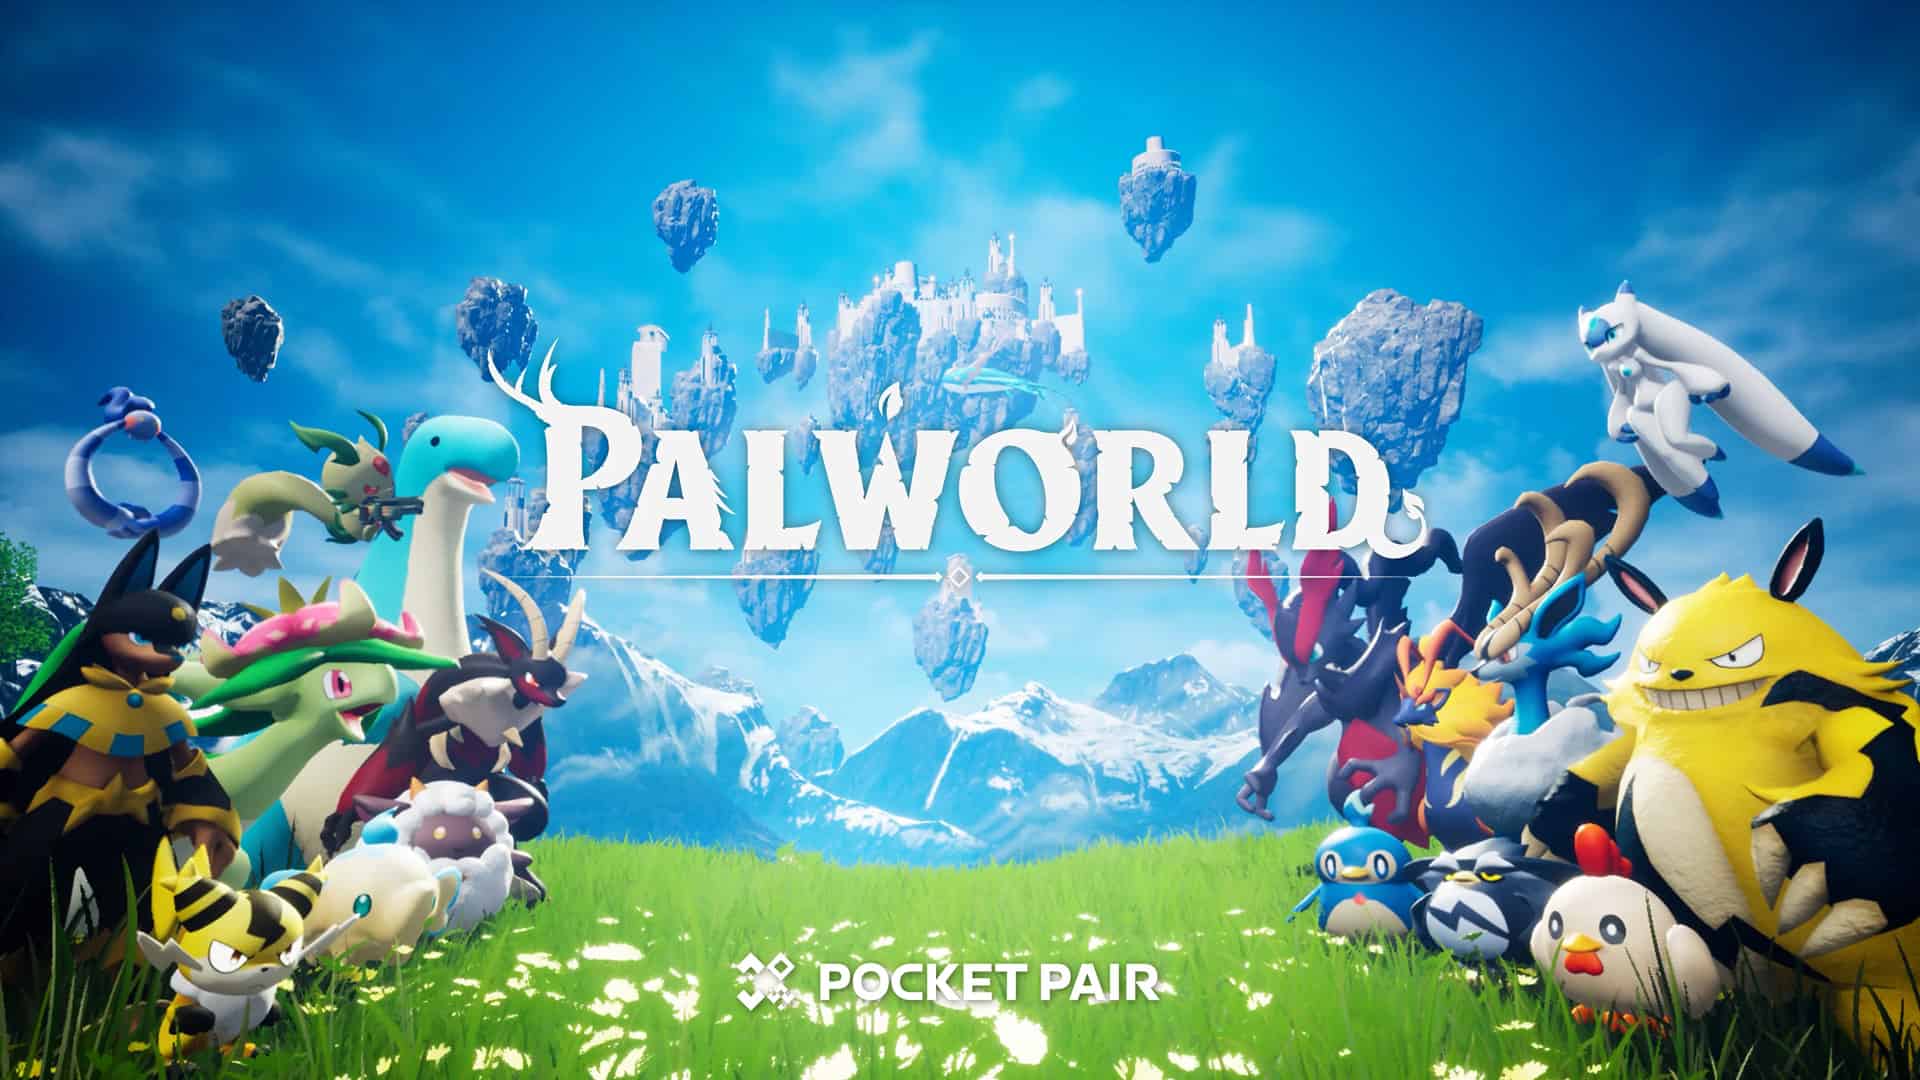 Palworld-7ed0eda364c3dd0dbf8b1